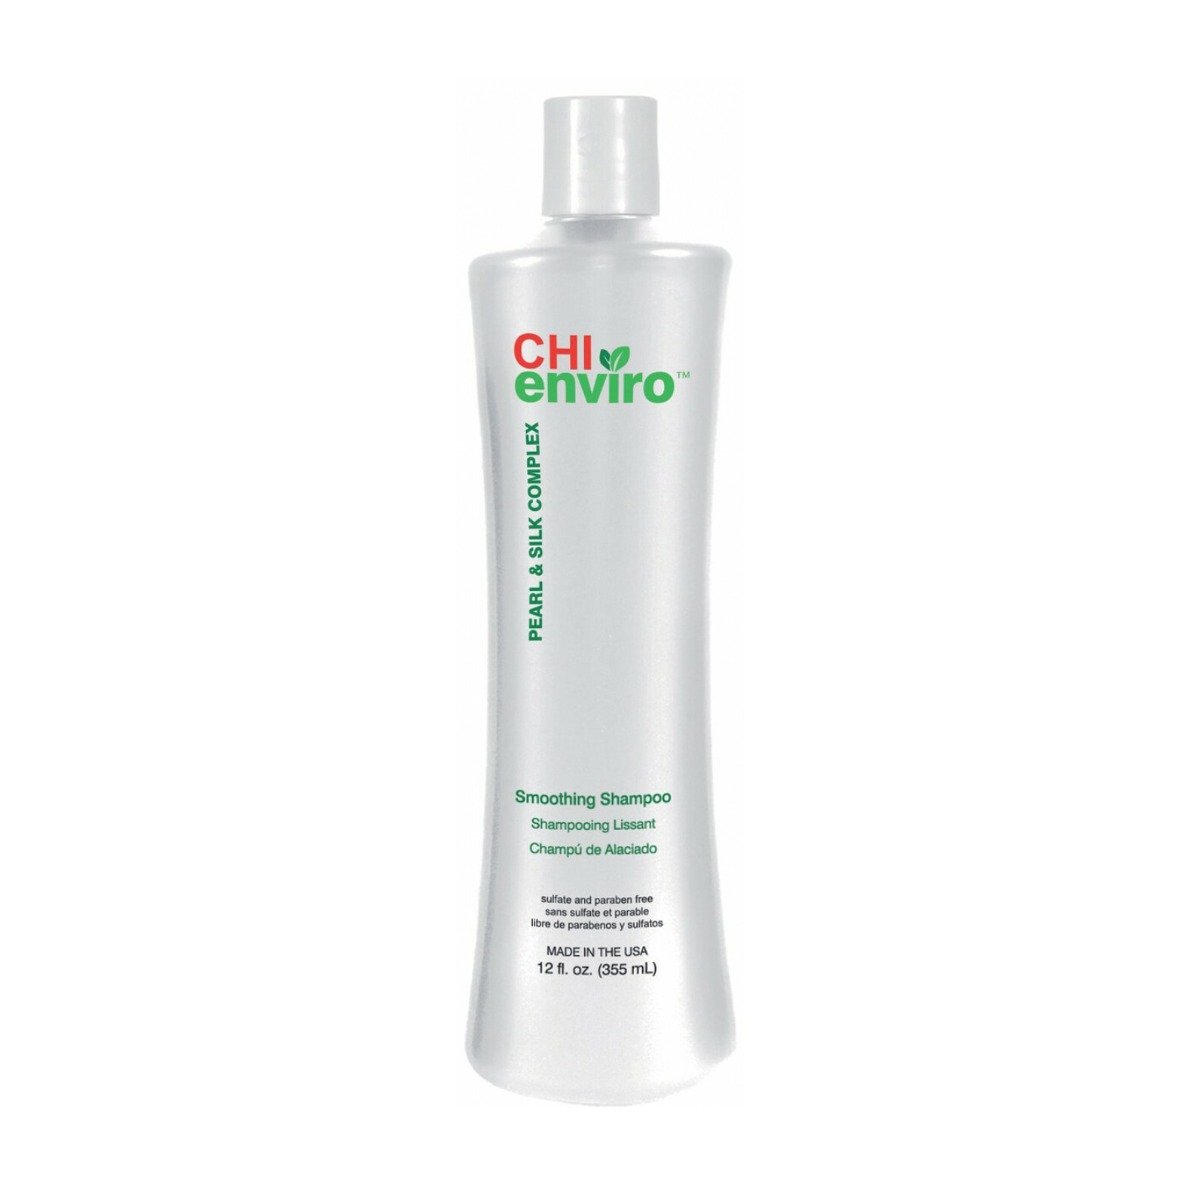 CHI Enviro Smoothing Shampoo - 355ml - Bloom Pharmacy